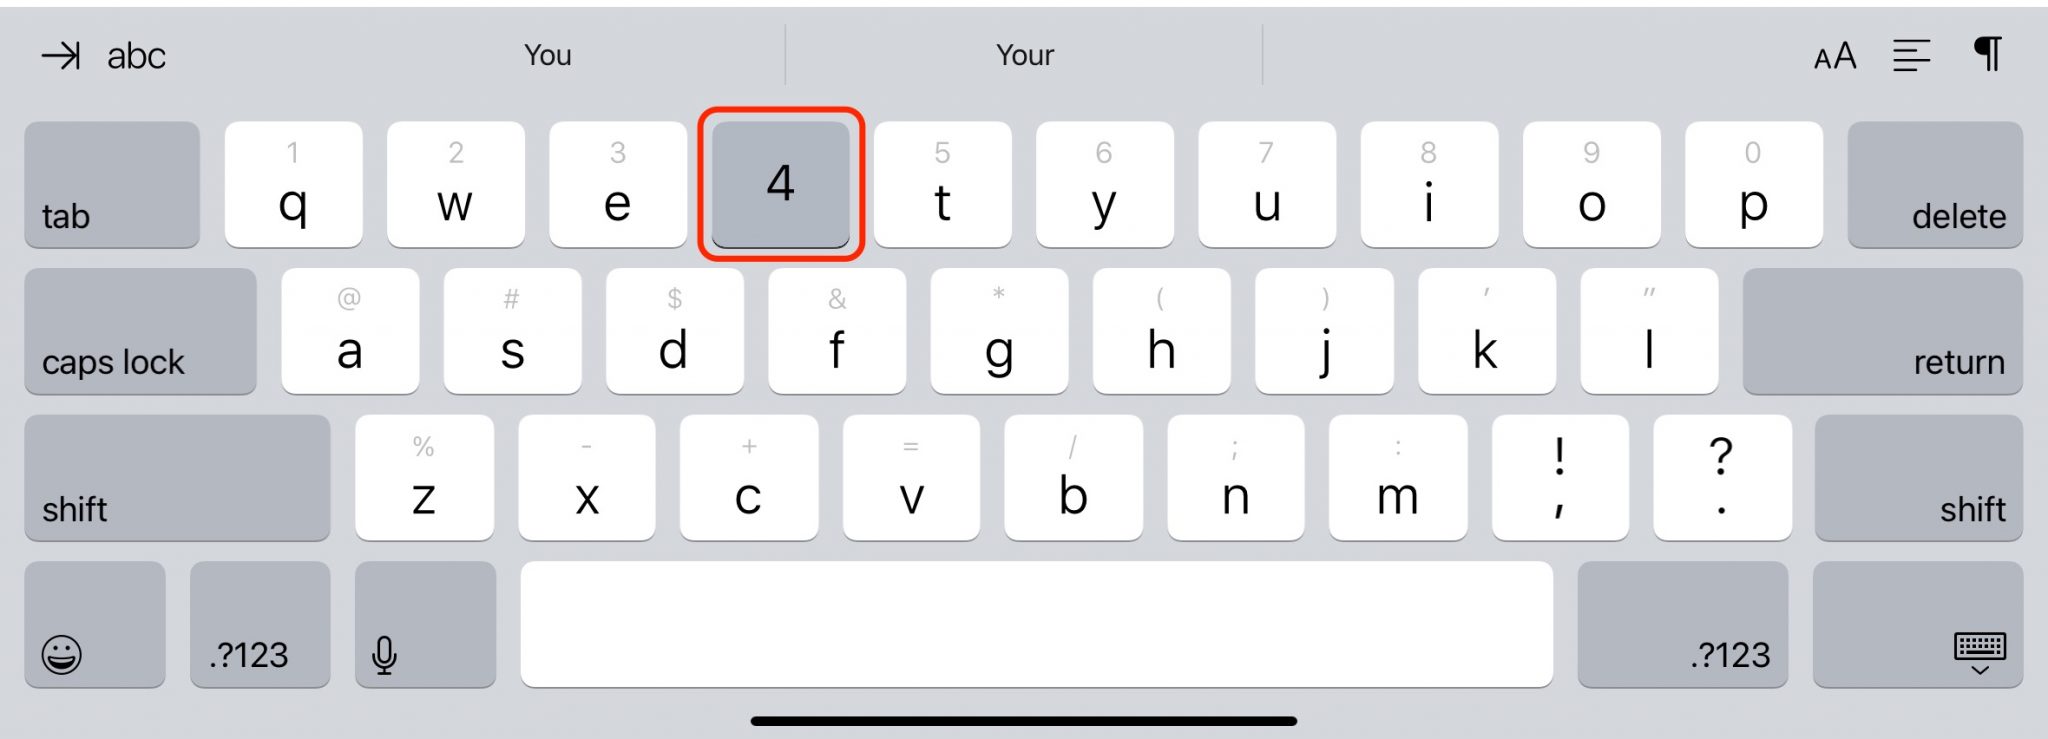 ipad keyboard predictive text not working